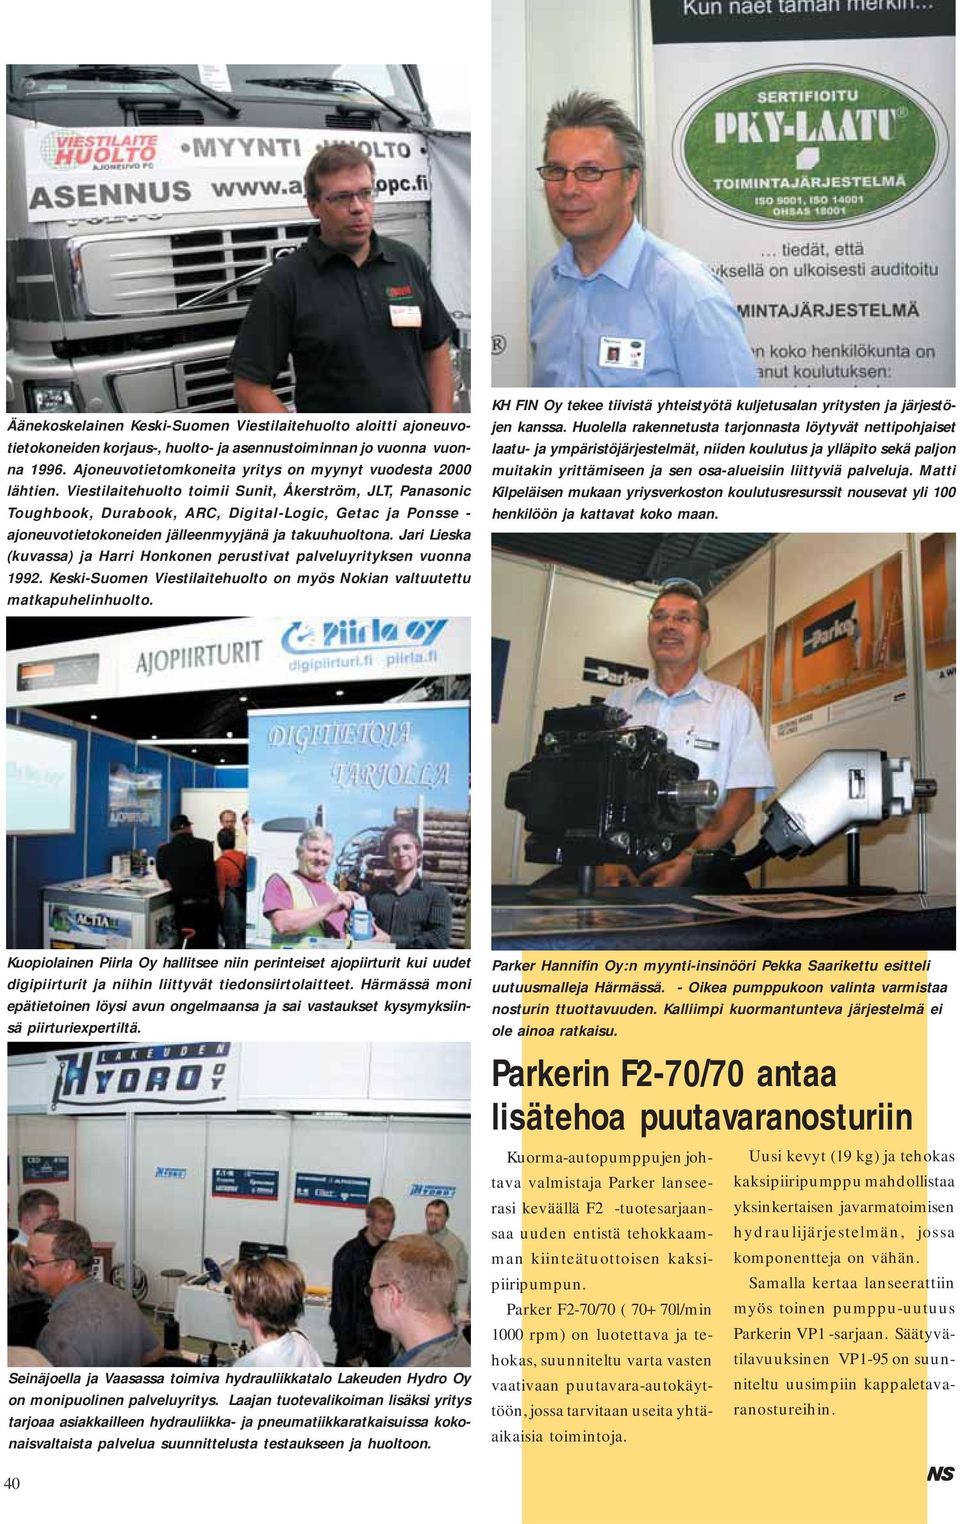 Jari Lieska (kuvassa) ja Harri Honkonen perustivat palveluyrityksen vuonna 1992. Keski-Suomen Viestilaitehuolto on myös Nokian valtuutettu matkapuhelinhuolto.